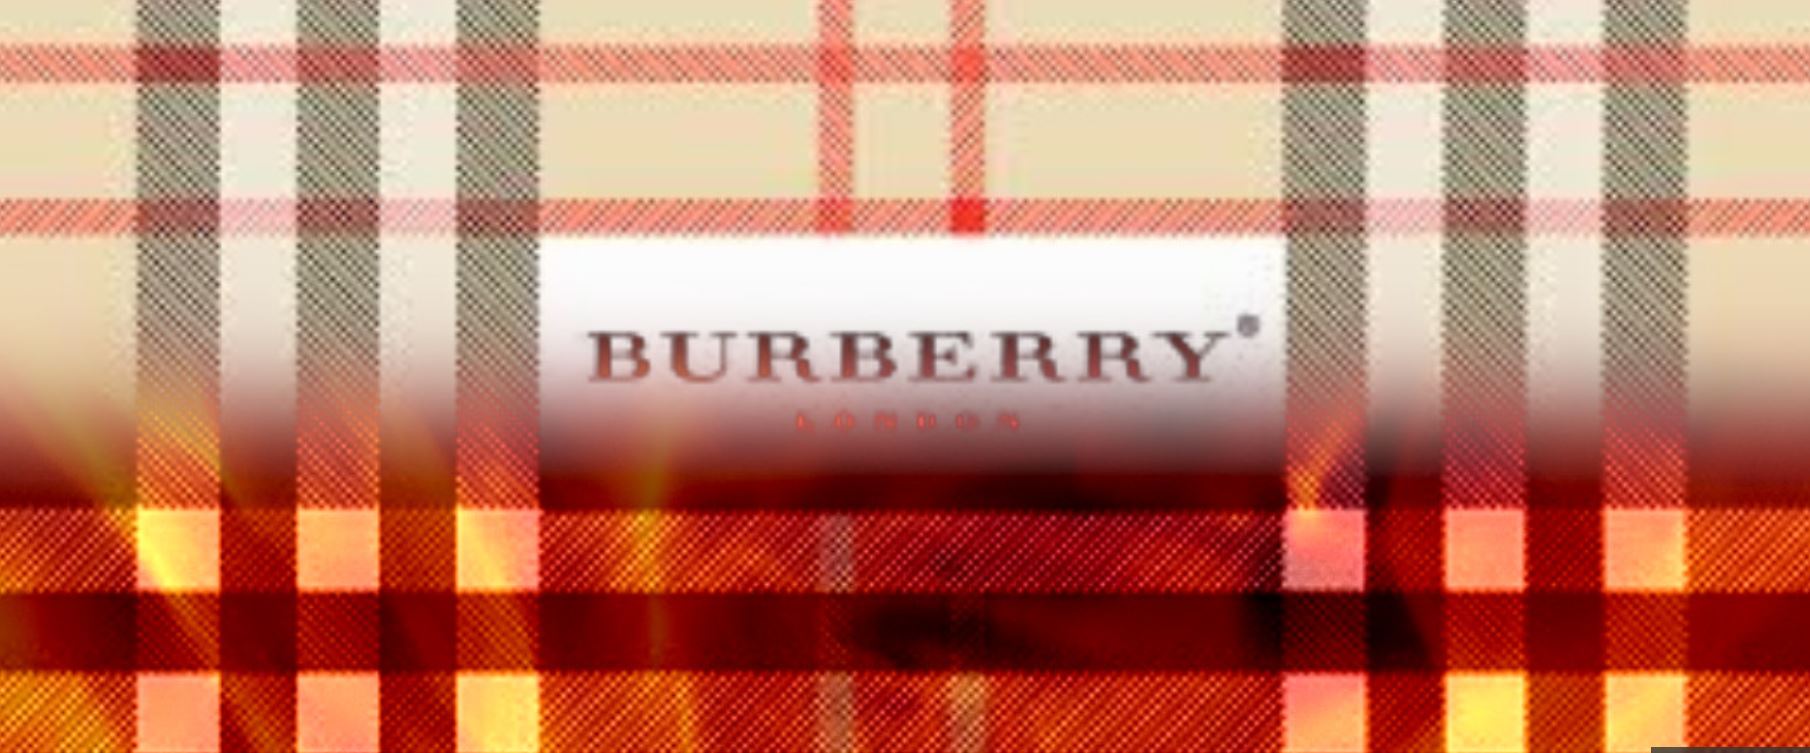 burberry burning